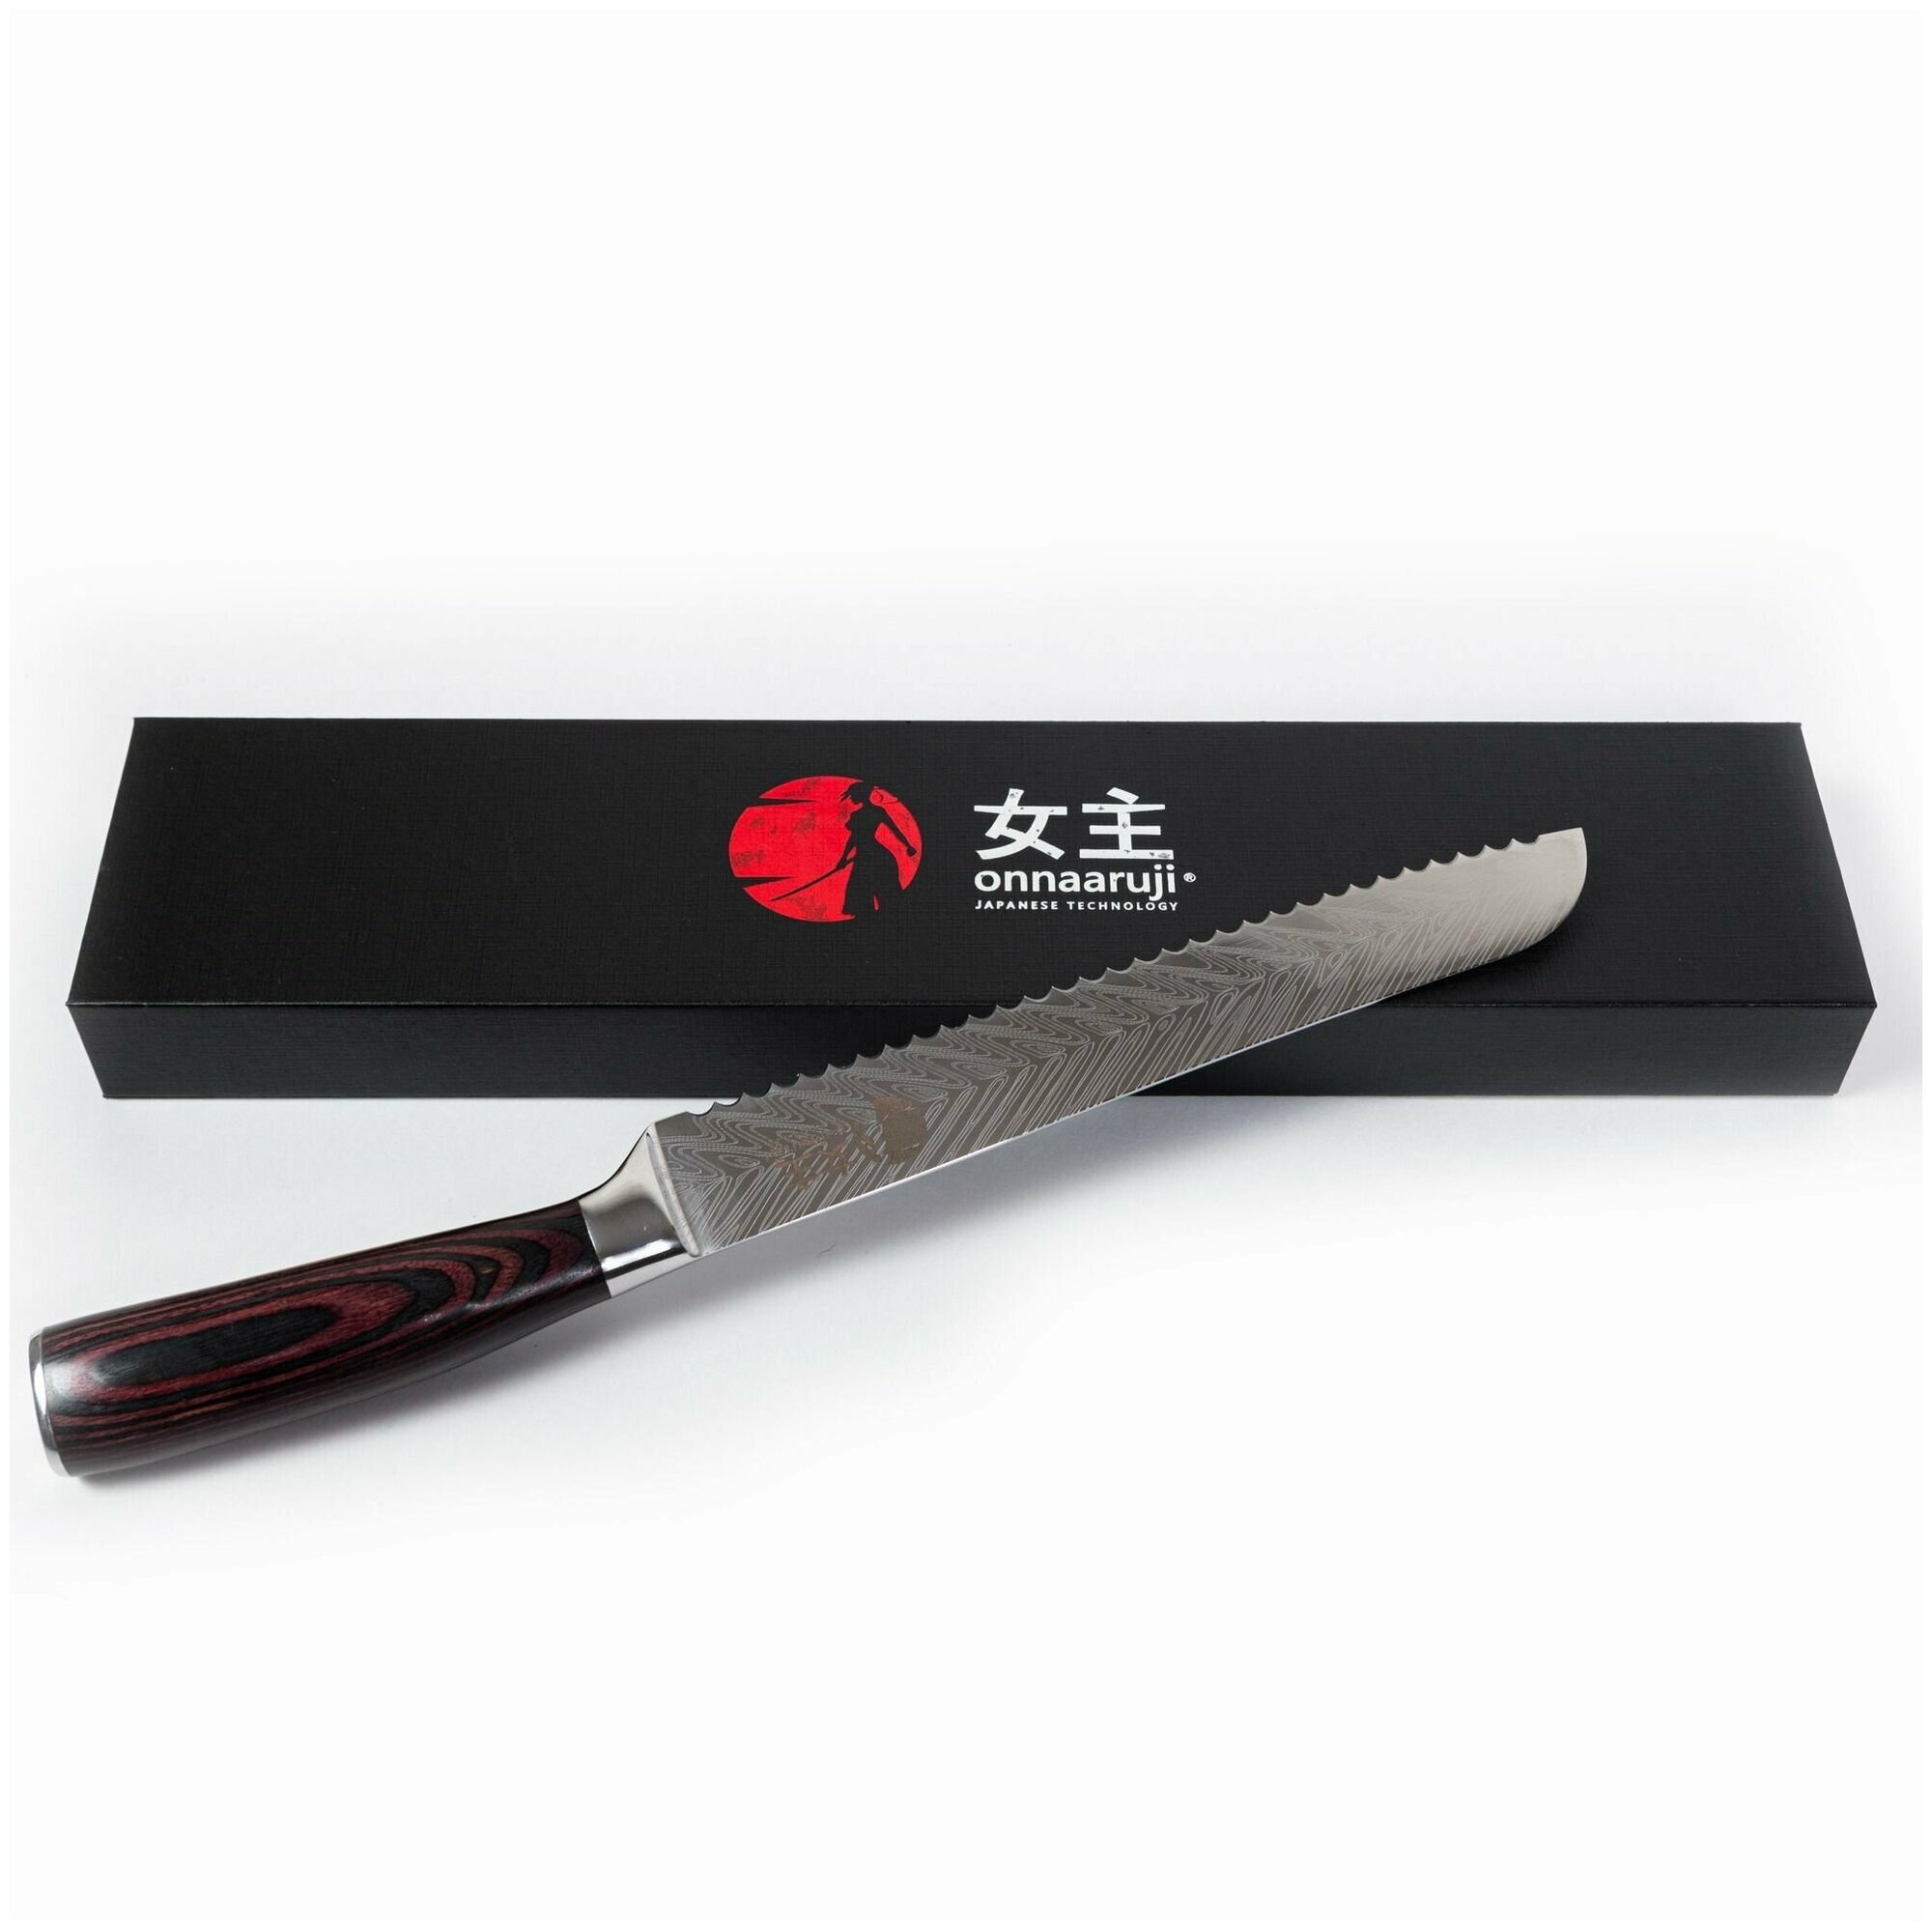 Нож кухонный для хлеба и бисквита профессиональный, поварской Onnaaruji. 20см.